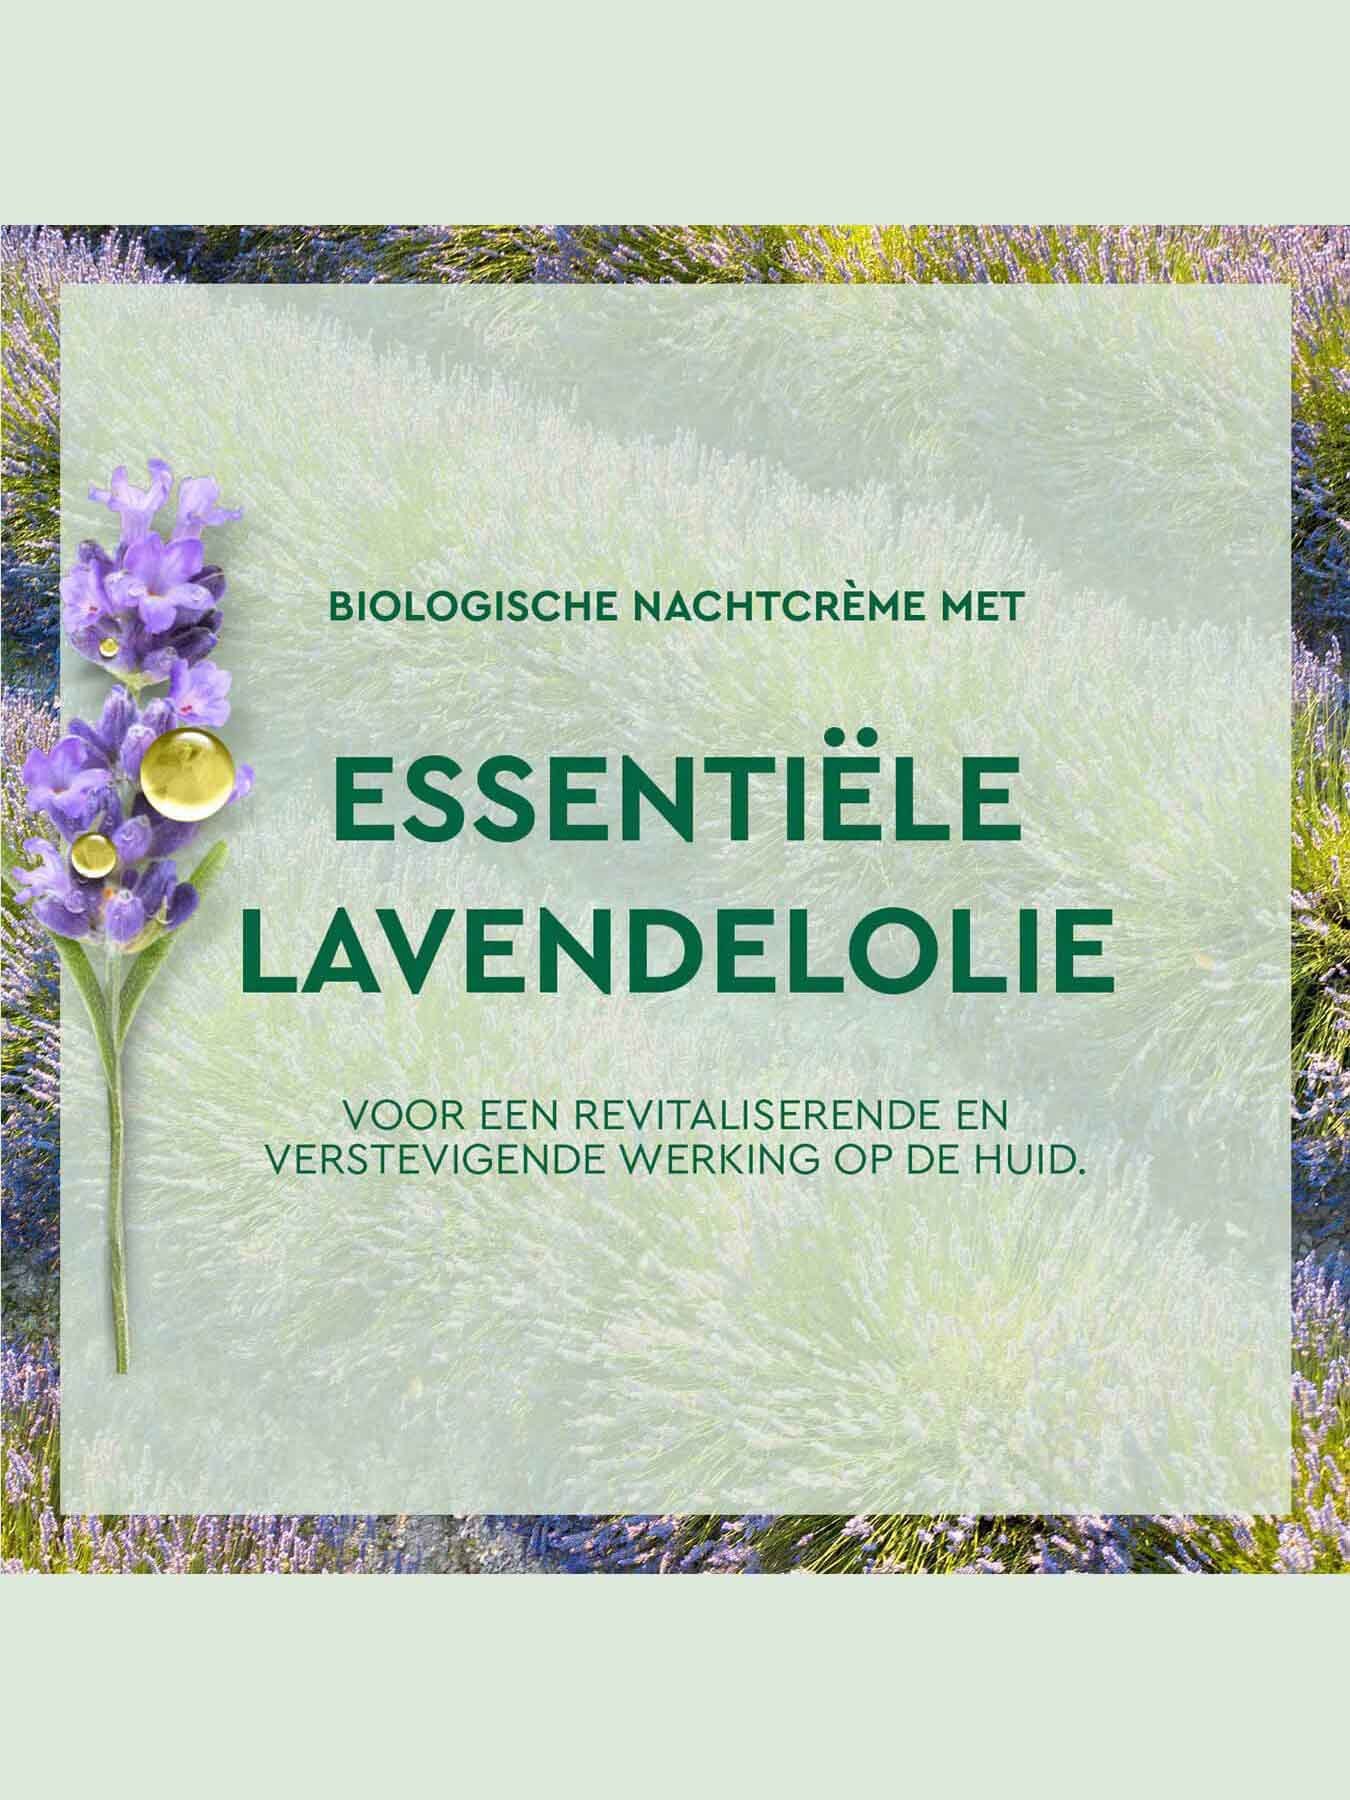 Biologische Nachtcrème met essentiële lavendelolie